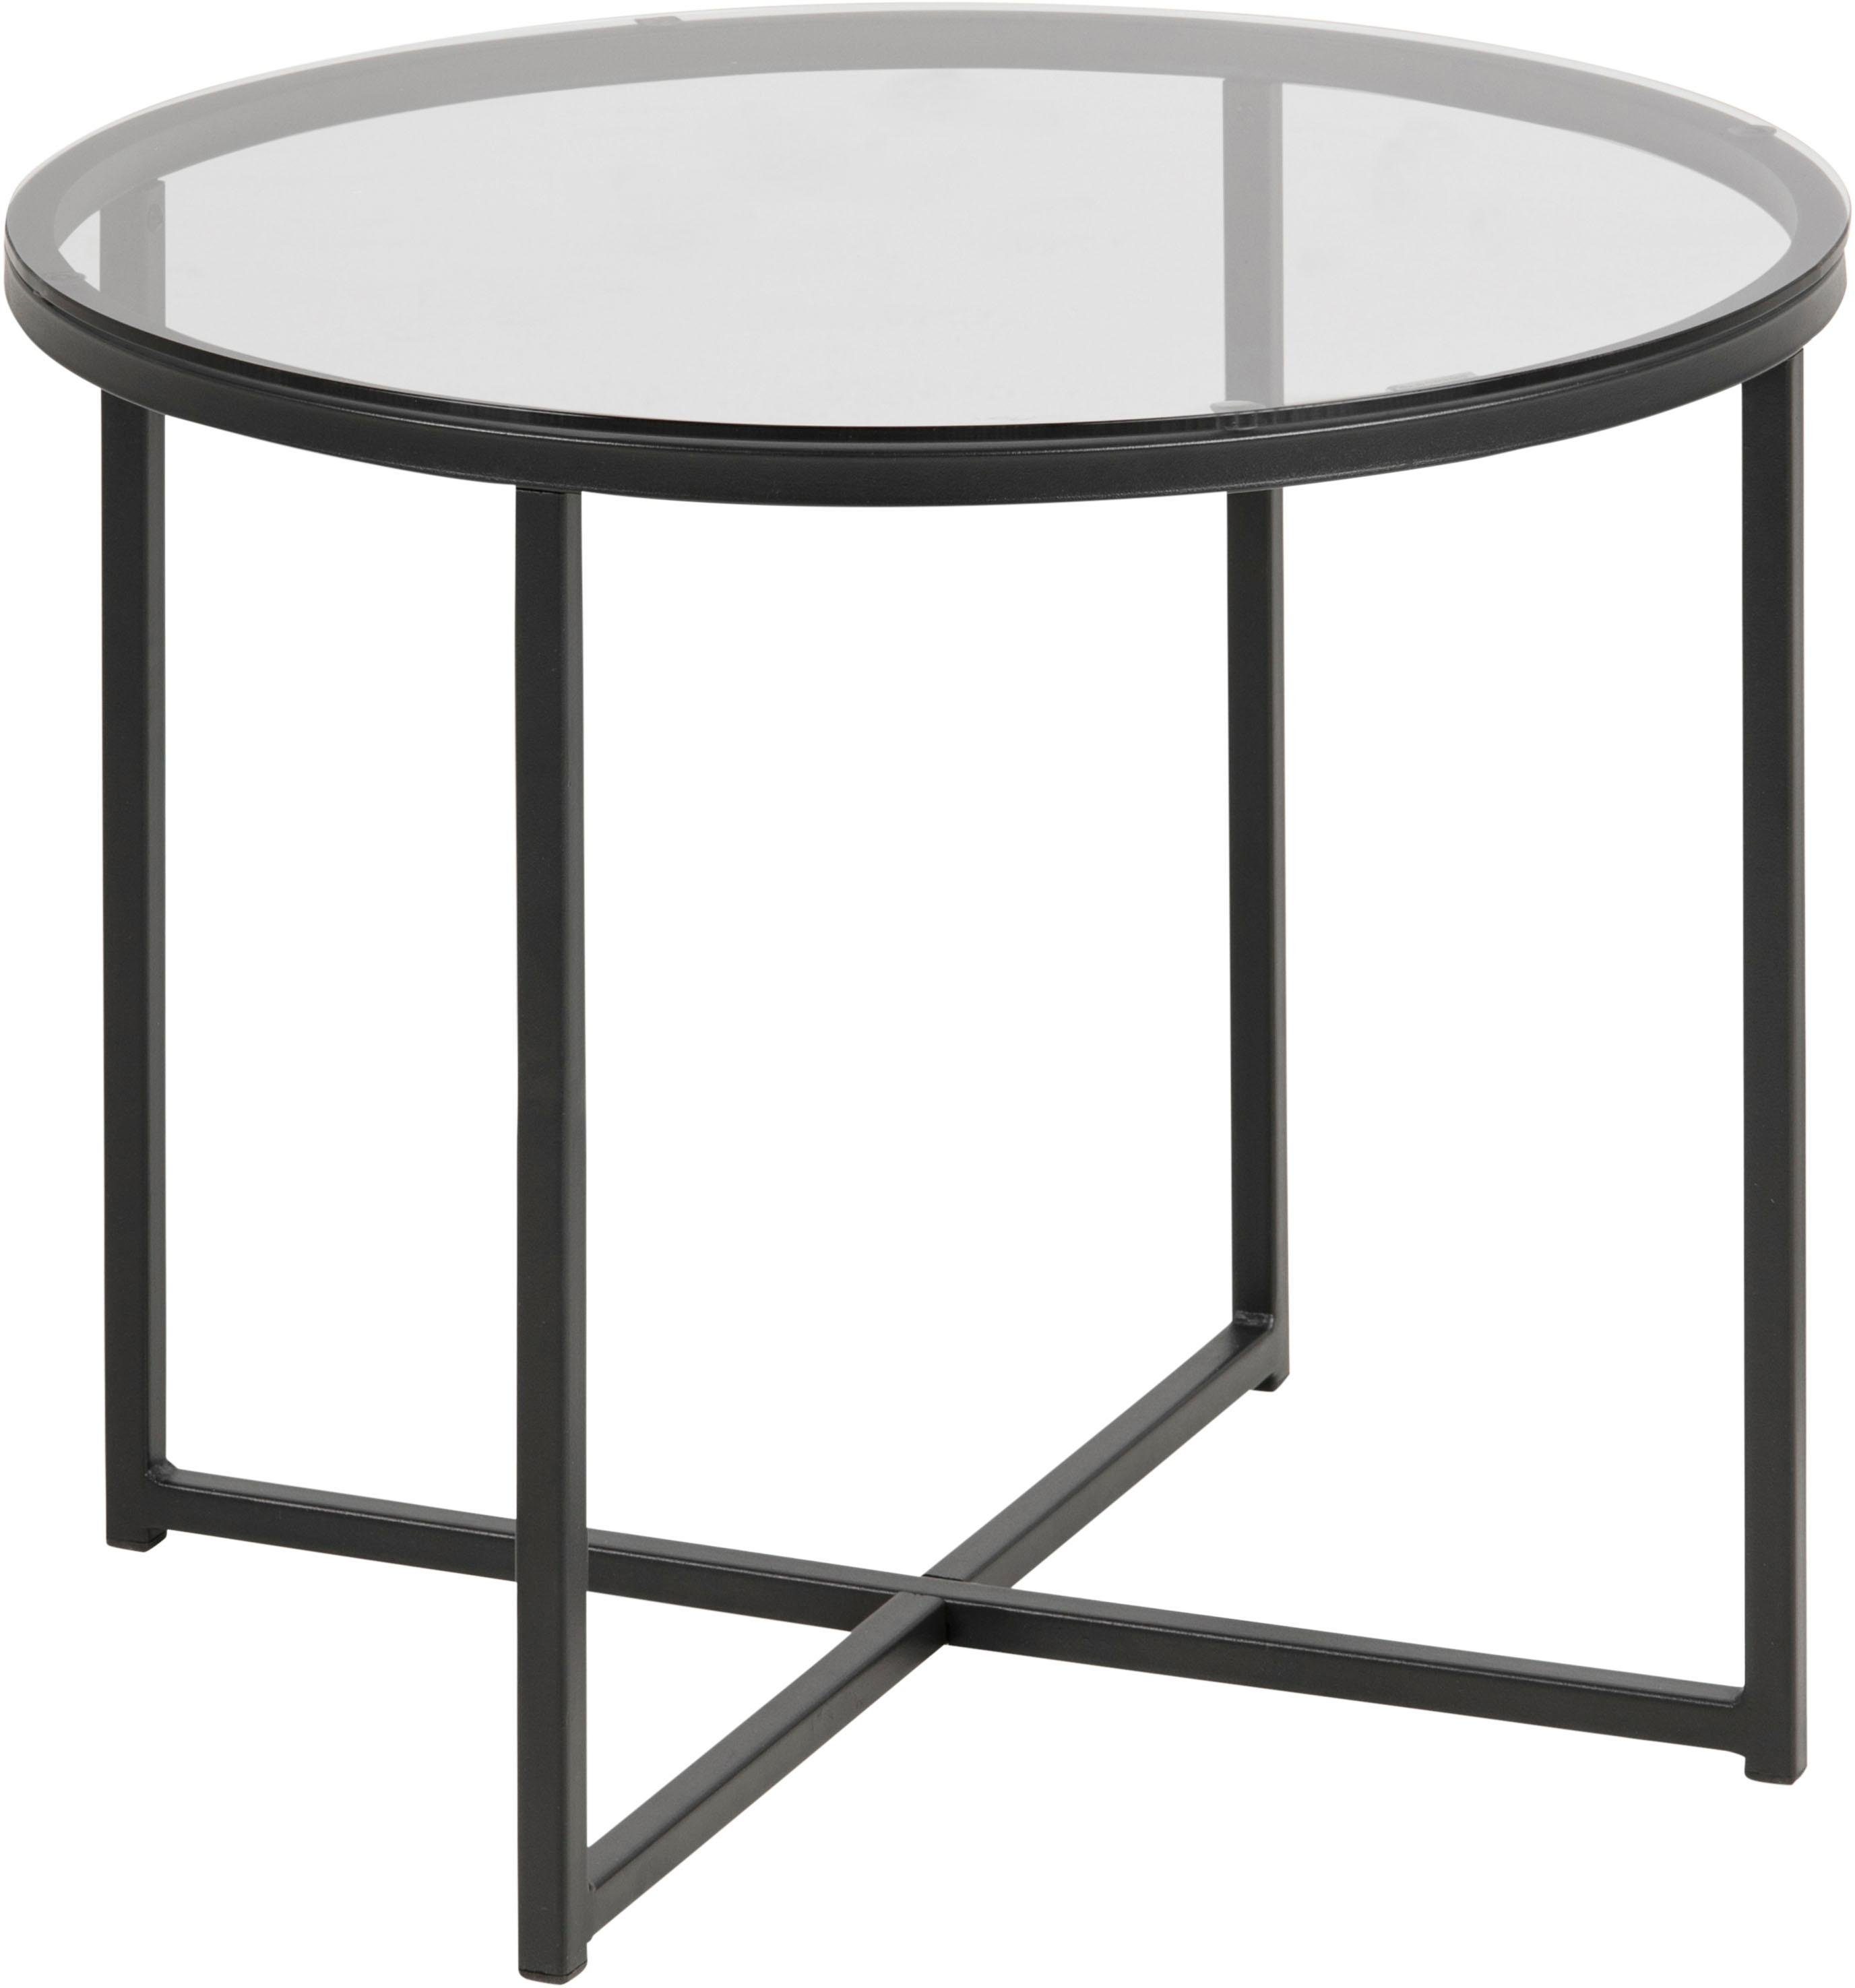 ACTONA GROUP Couchtisch Conrad, Tischplatte aus Rauchglas, Metallgestell, Breite 55 cm